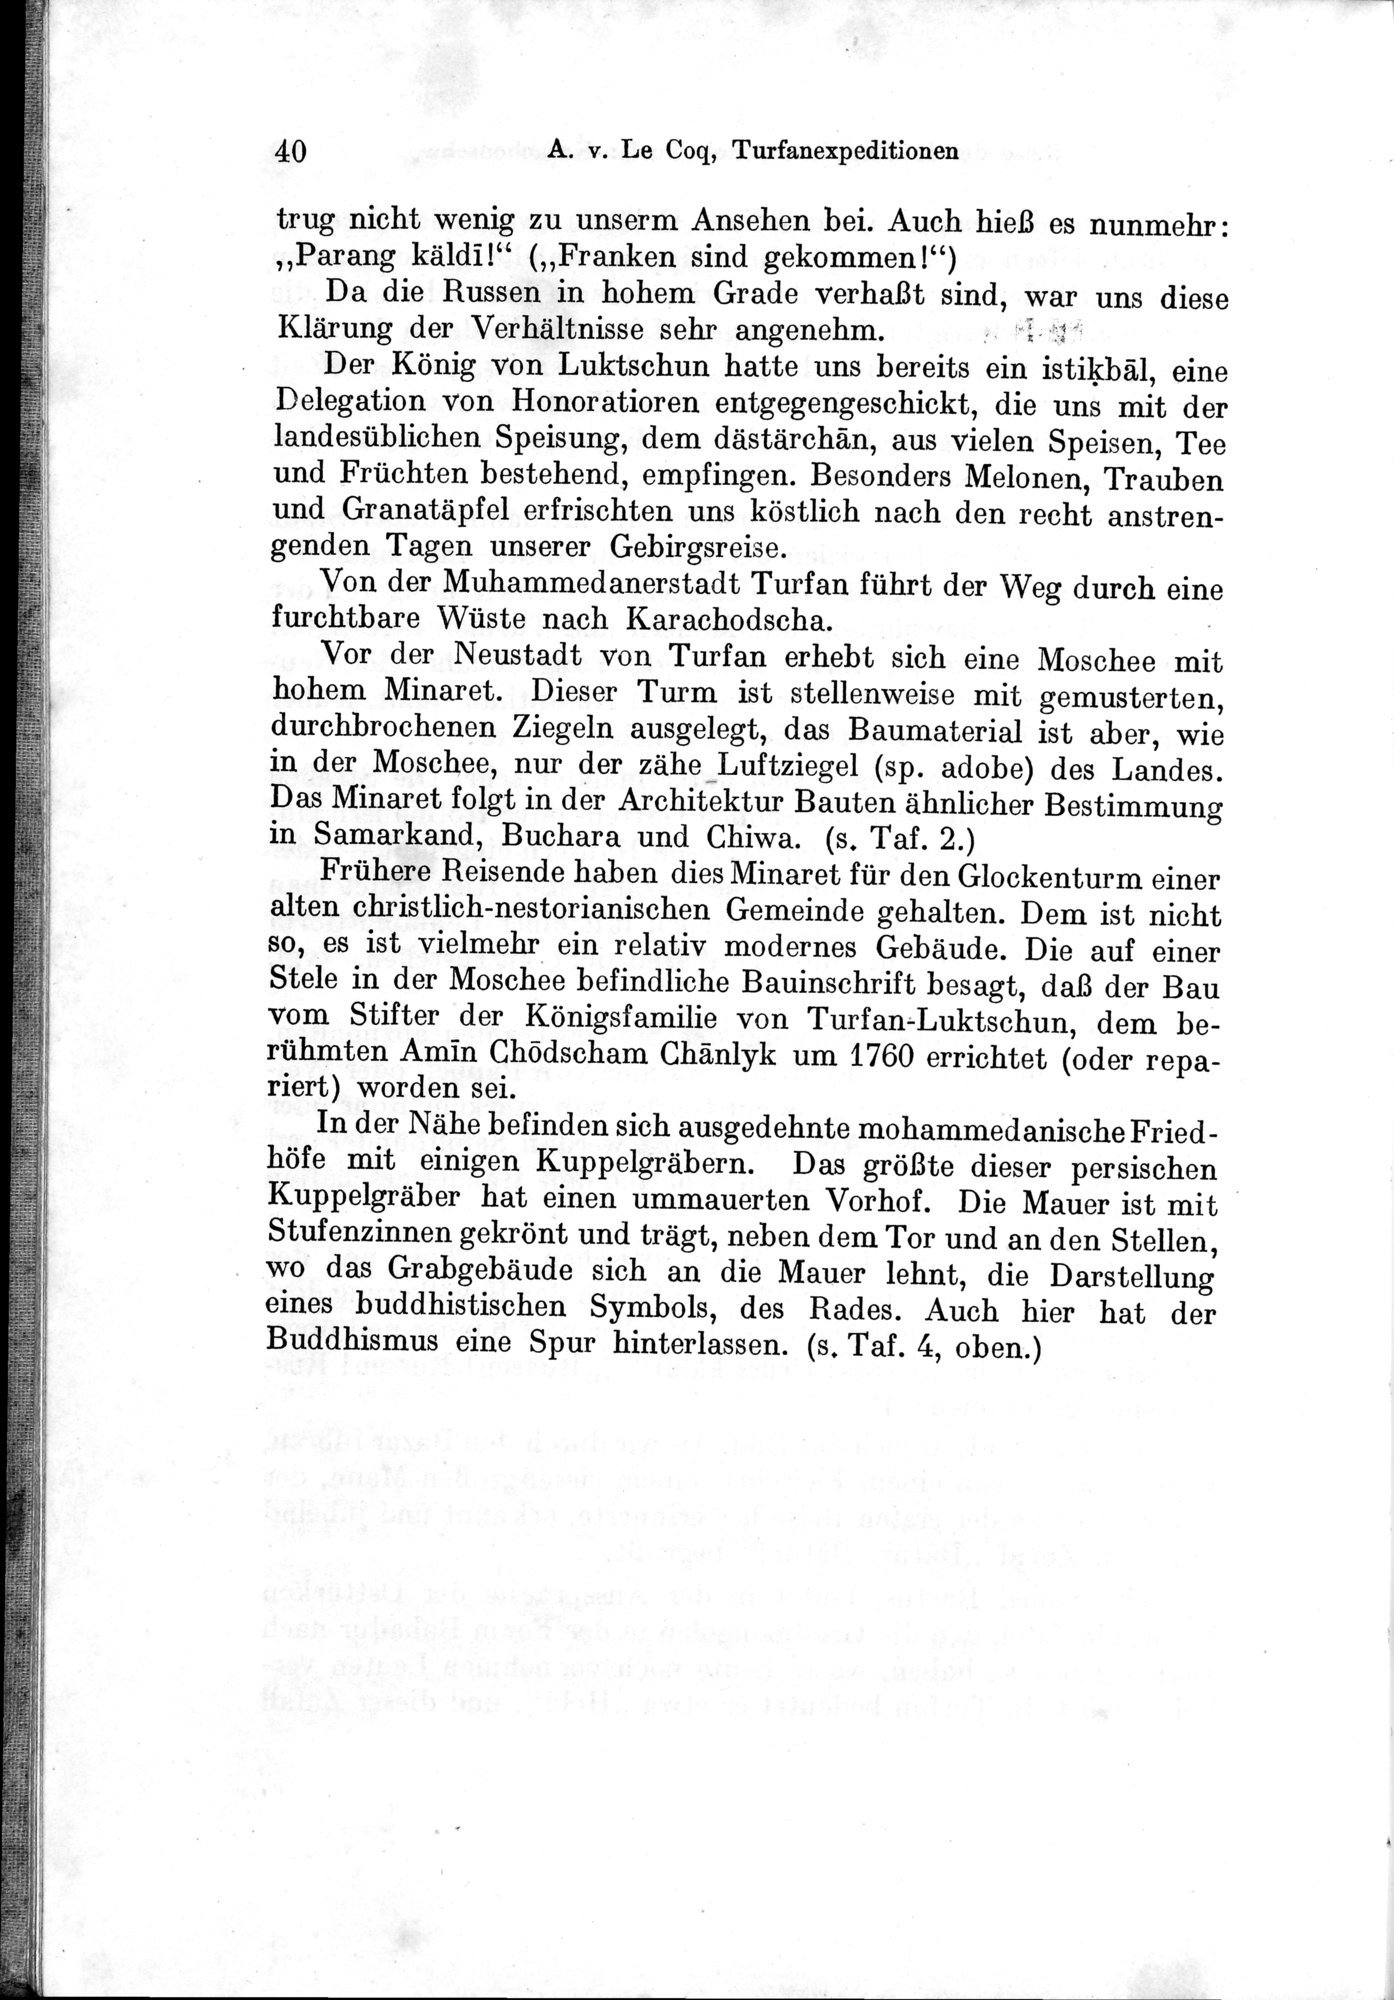 Auf Hellas Spuren in Ostturkistan : vol.1 / Page 62 (Grayscale High Resolution Image)